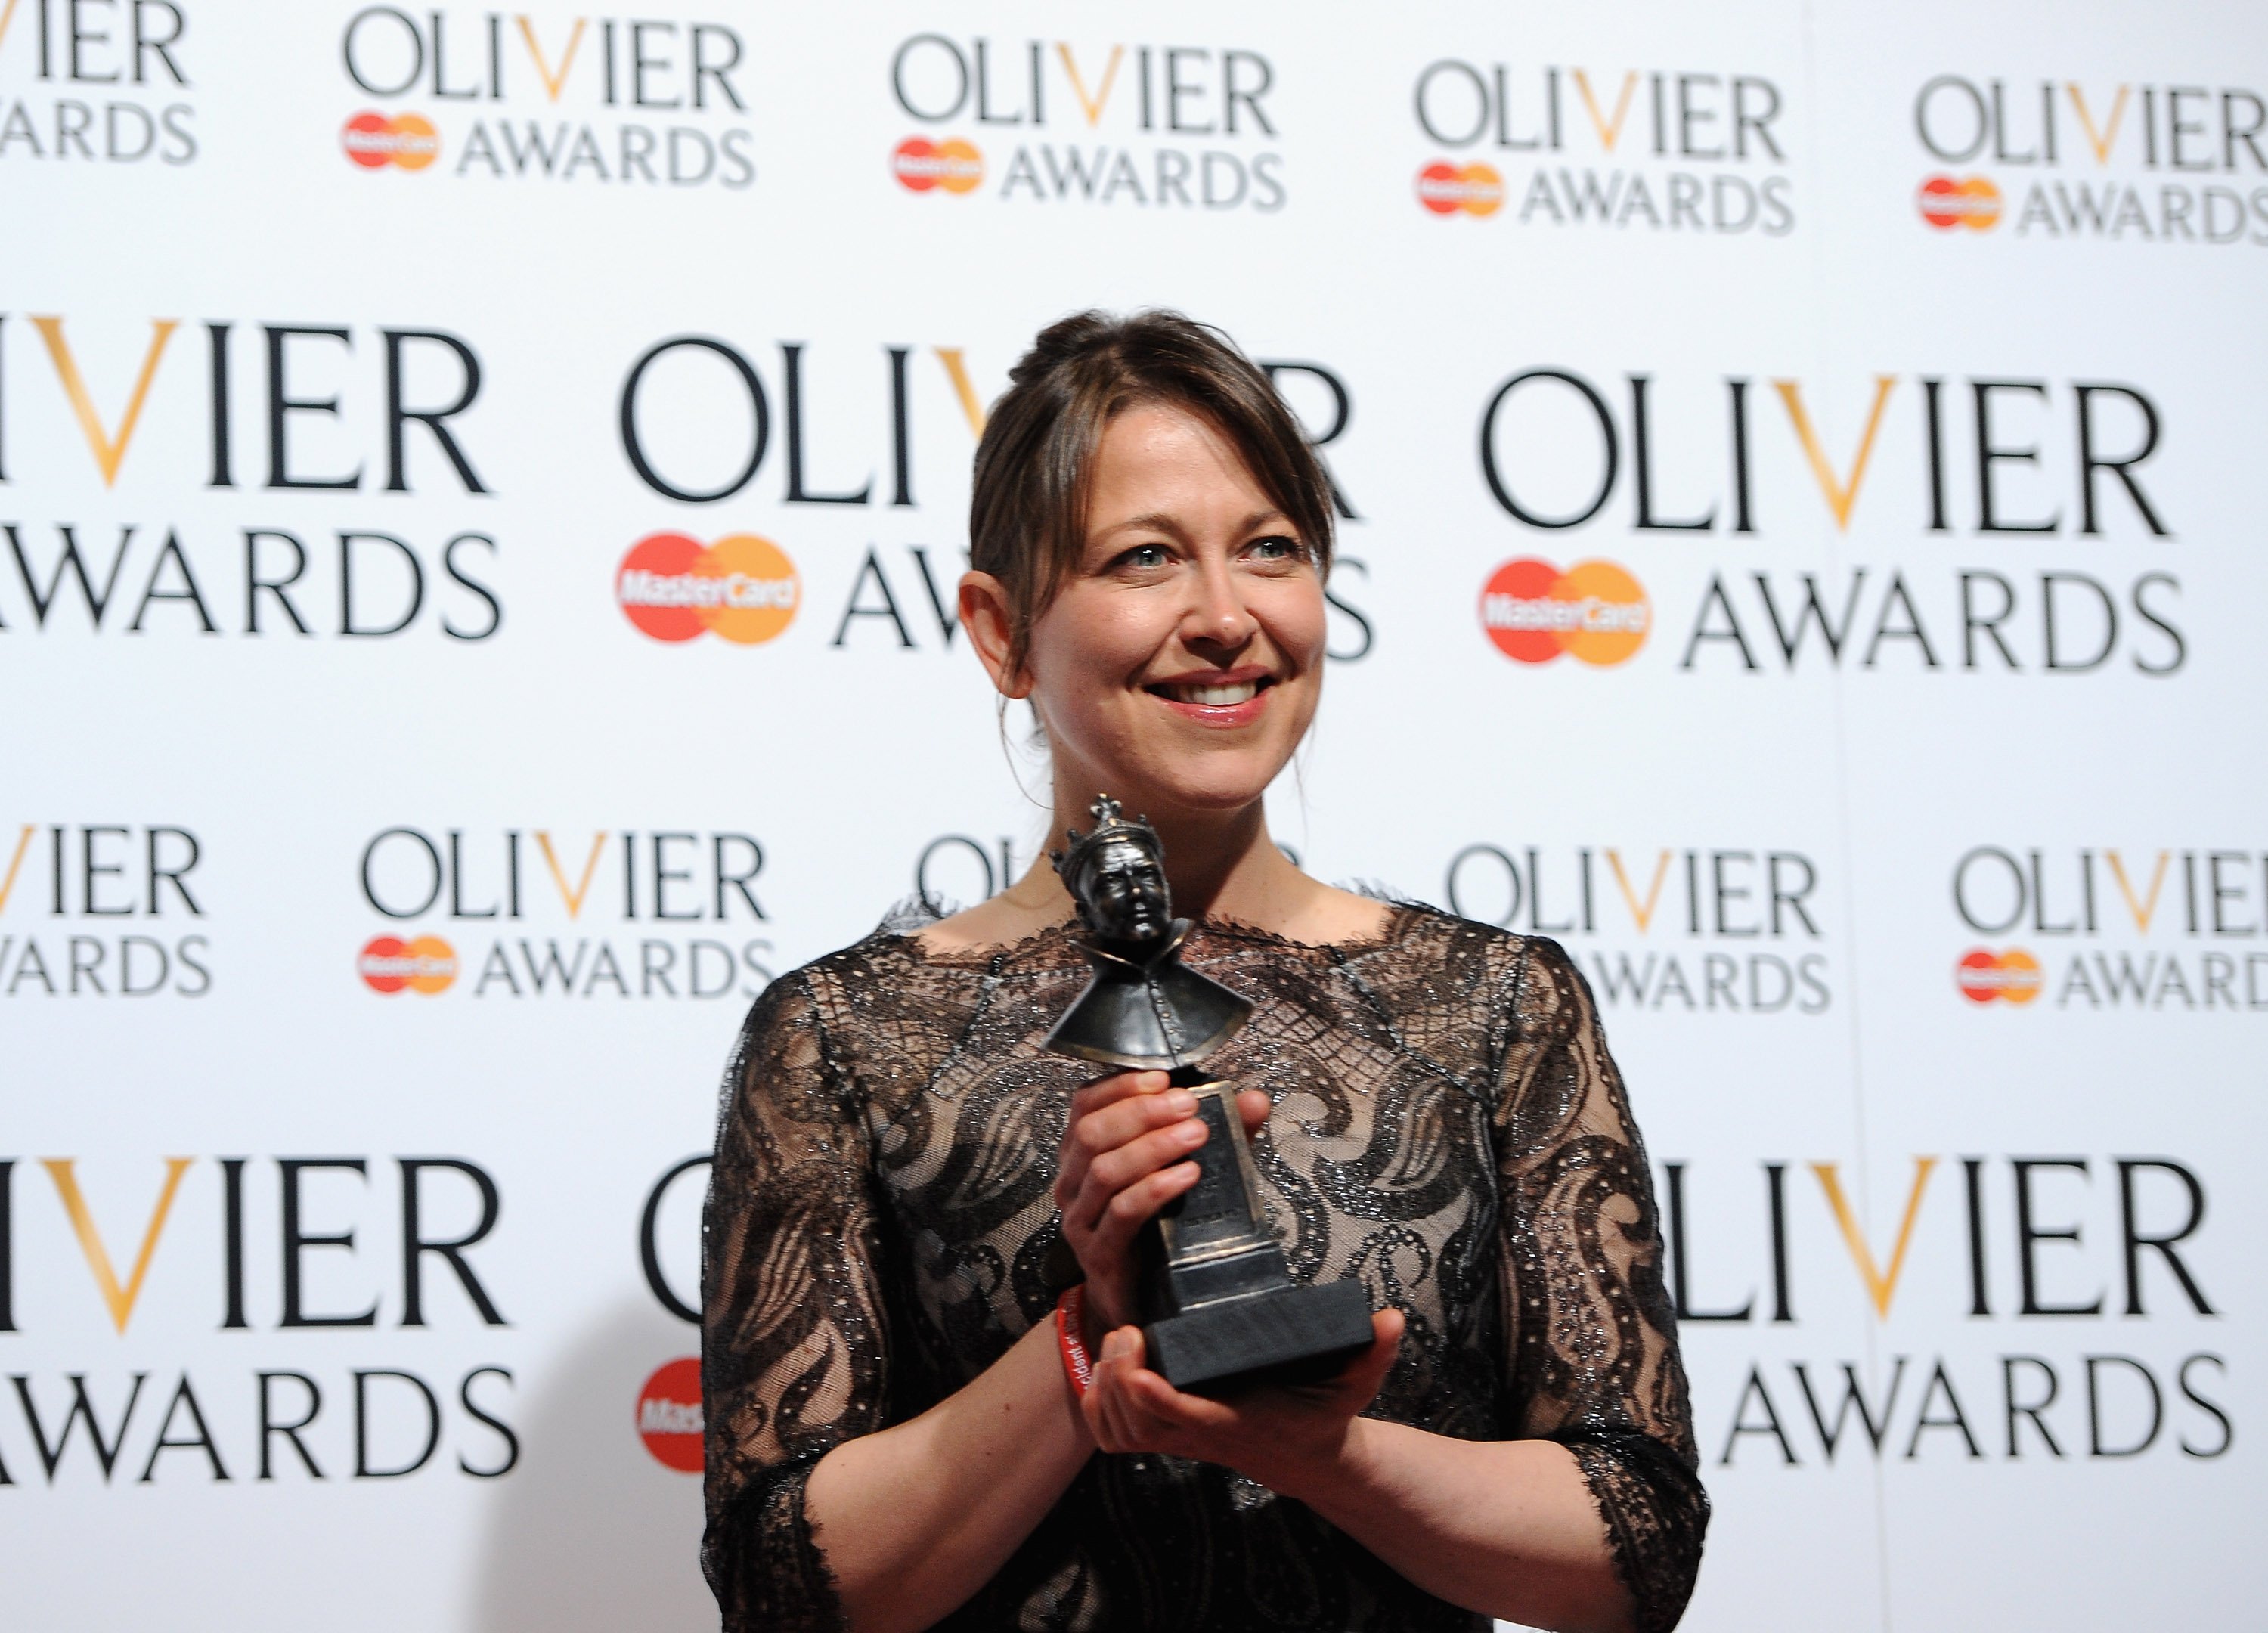 Nicola Walker holding her trophy at the 2013 Olivier awards